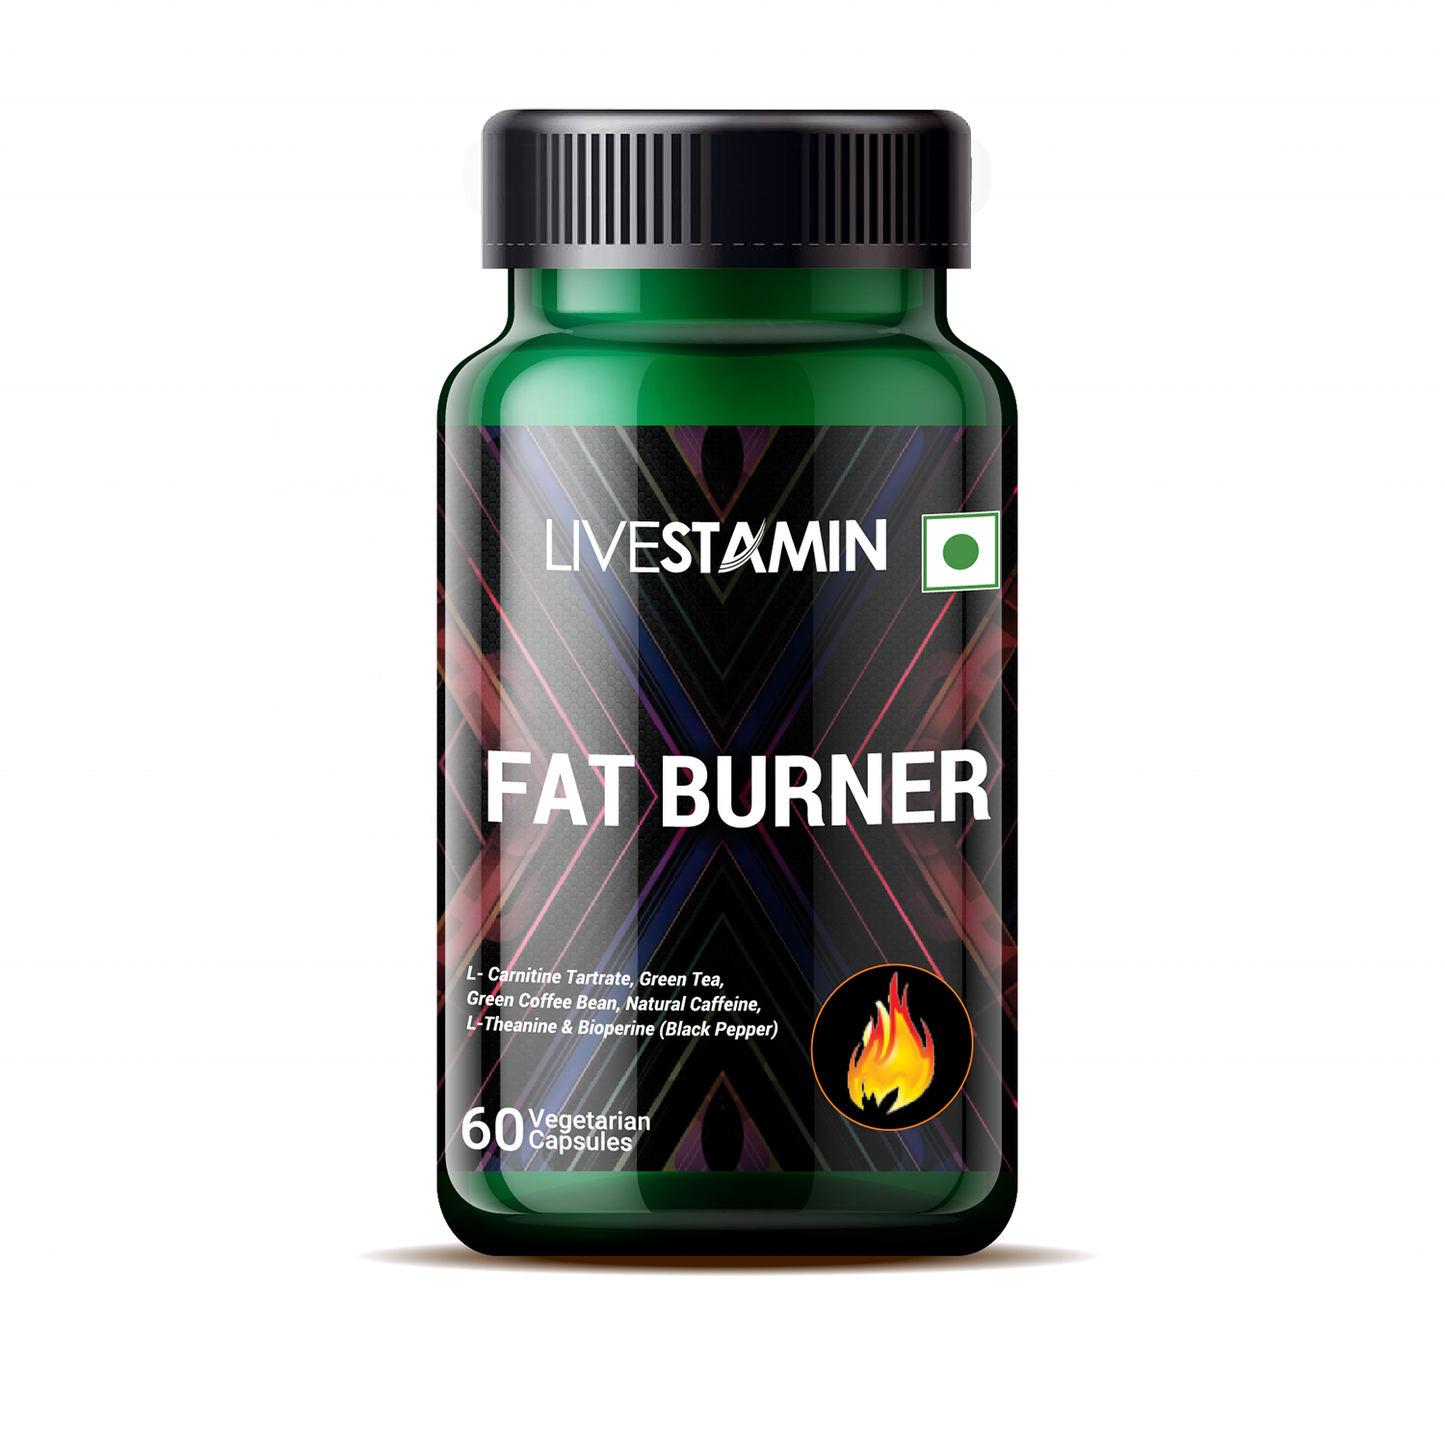 Livestamin Fat Burner 60 Veg Capsules